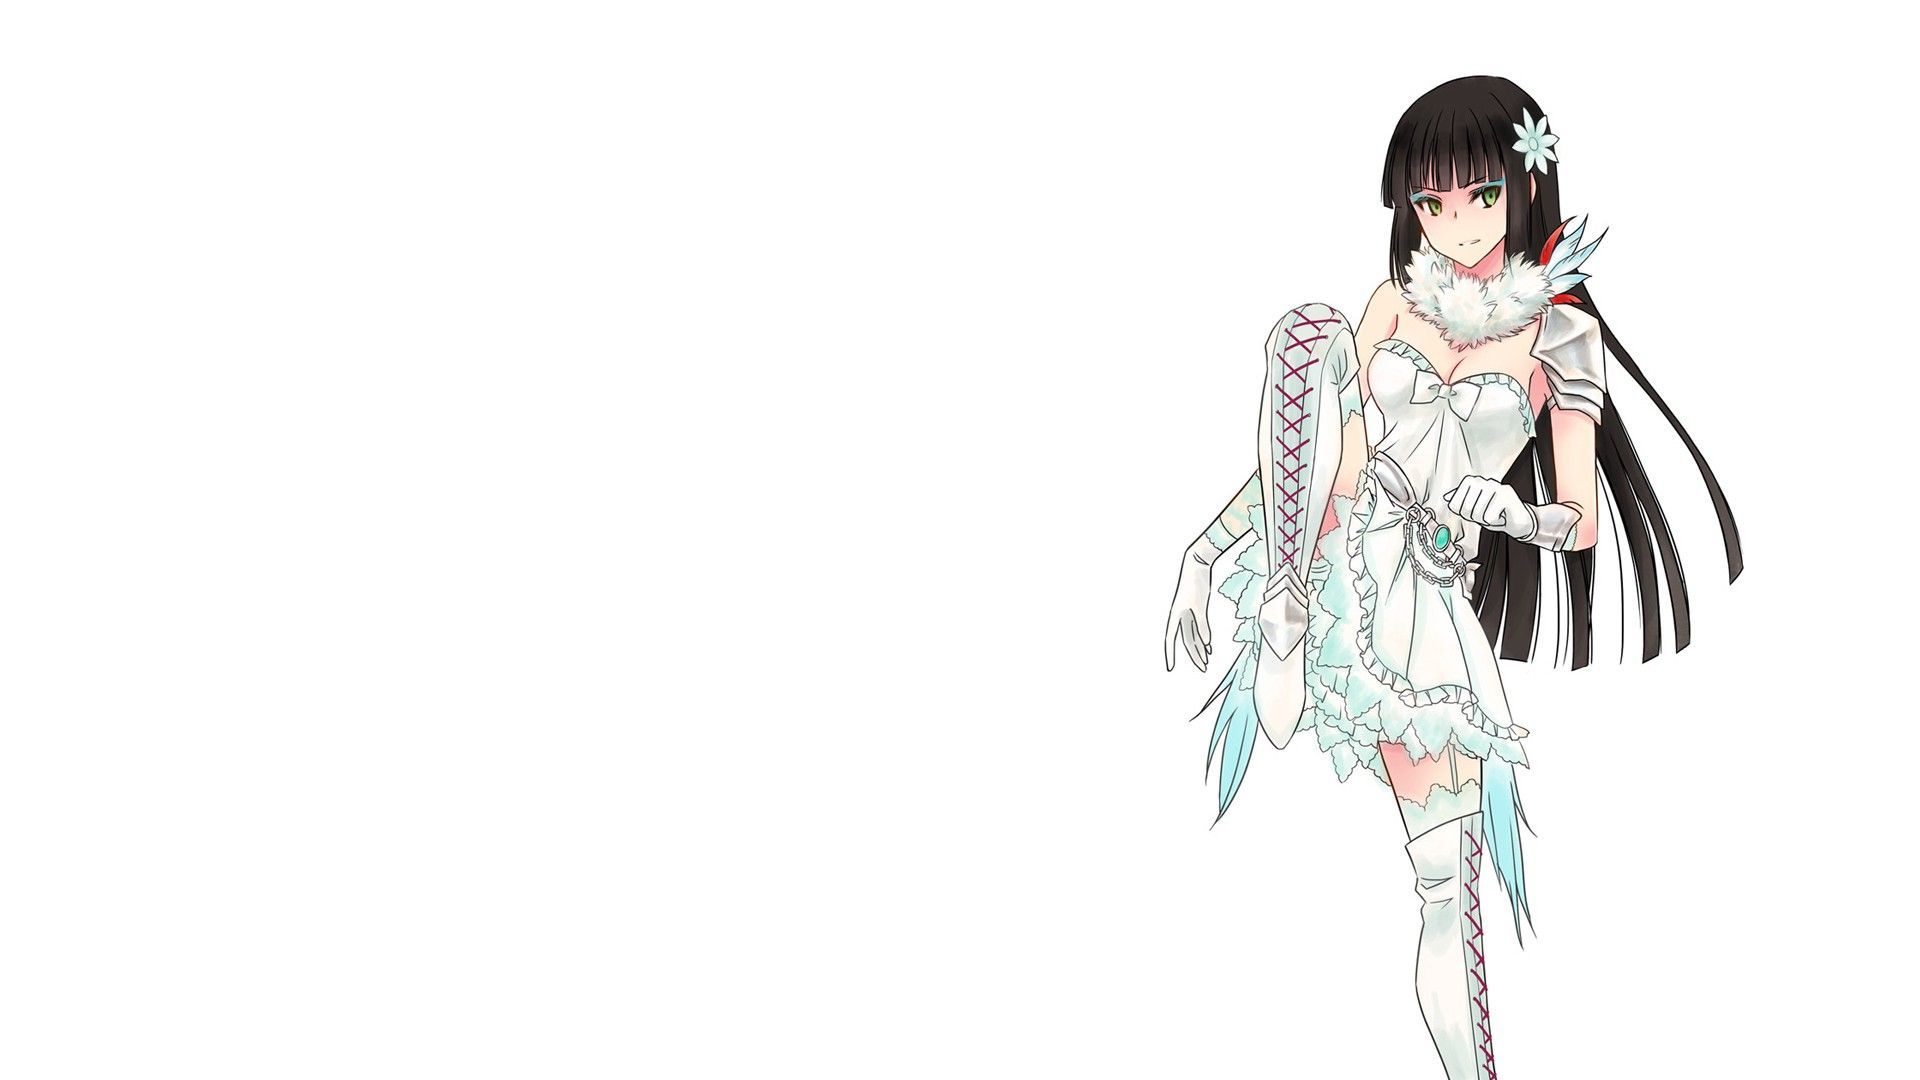 Wallpaper Anime Girl With White Long Hair Girls Armor Stockings